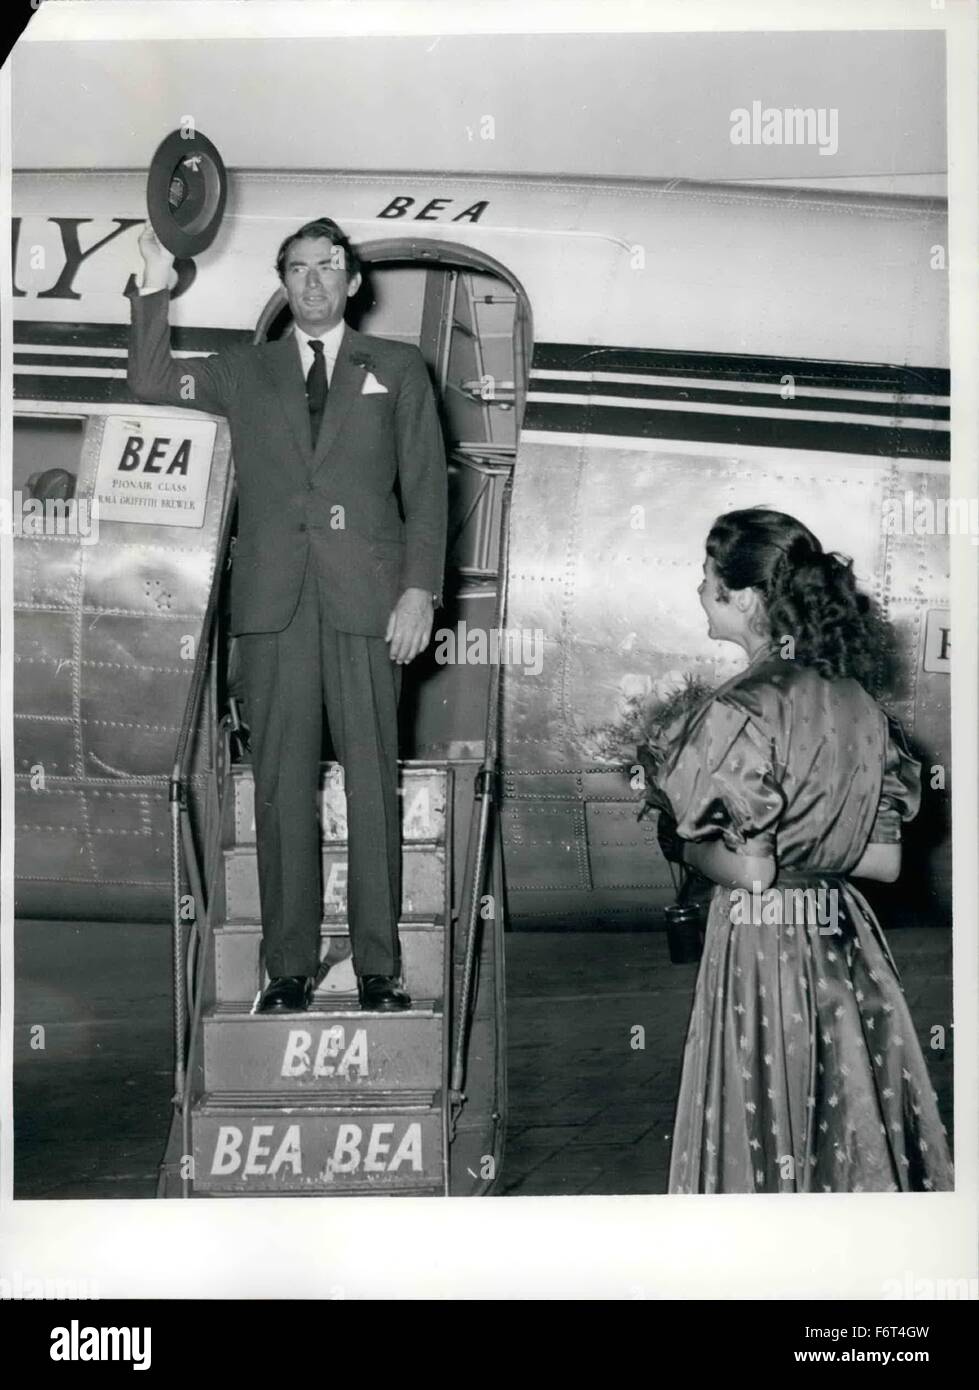 1965 - Transmission comme toujours Gregory Peck l'avion sur Berlin  Tempelhof Air-Port. L'acteur de cinéma américain a été reçu par la jeune  actrice Rita Gam avec un gros bouquet de roses jaunes.